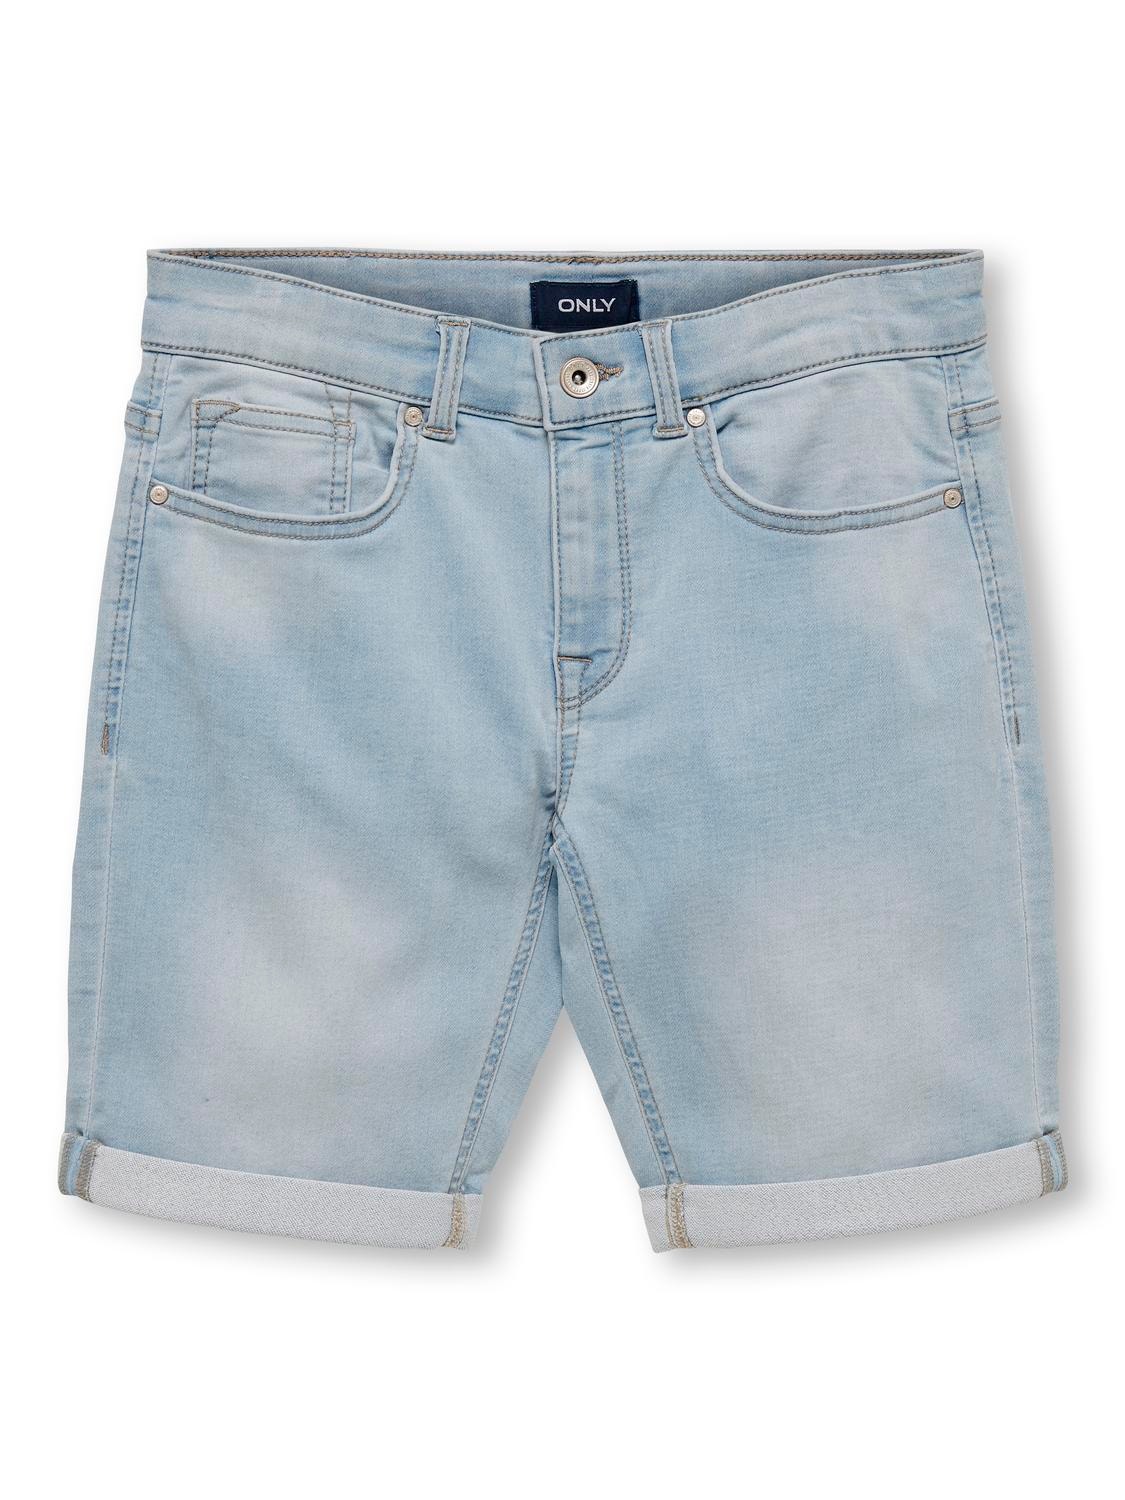 ONLY Skinny Fit Jeans -Light Blue Denim - 15283217